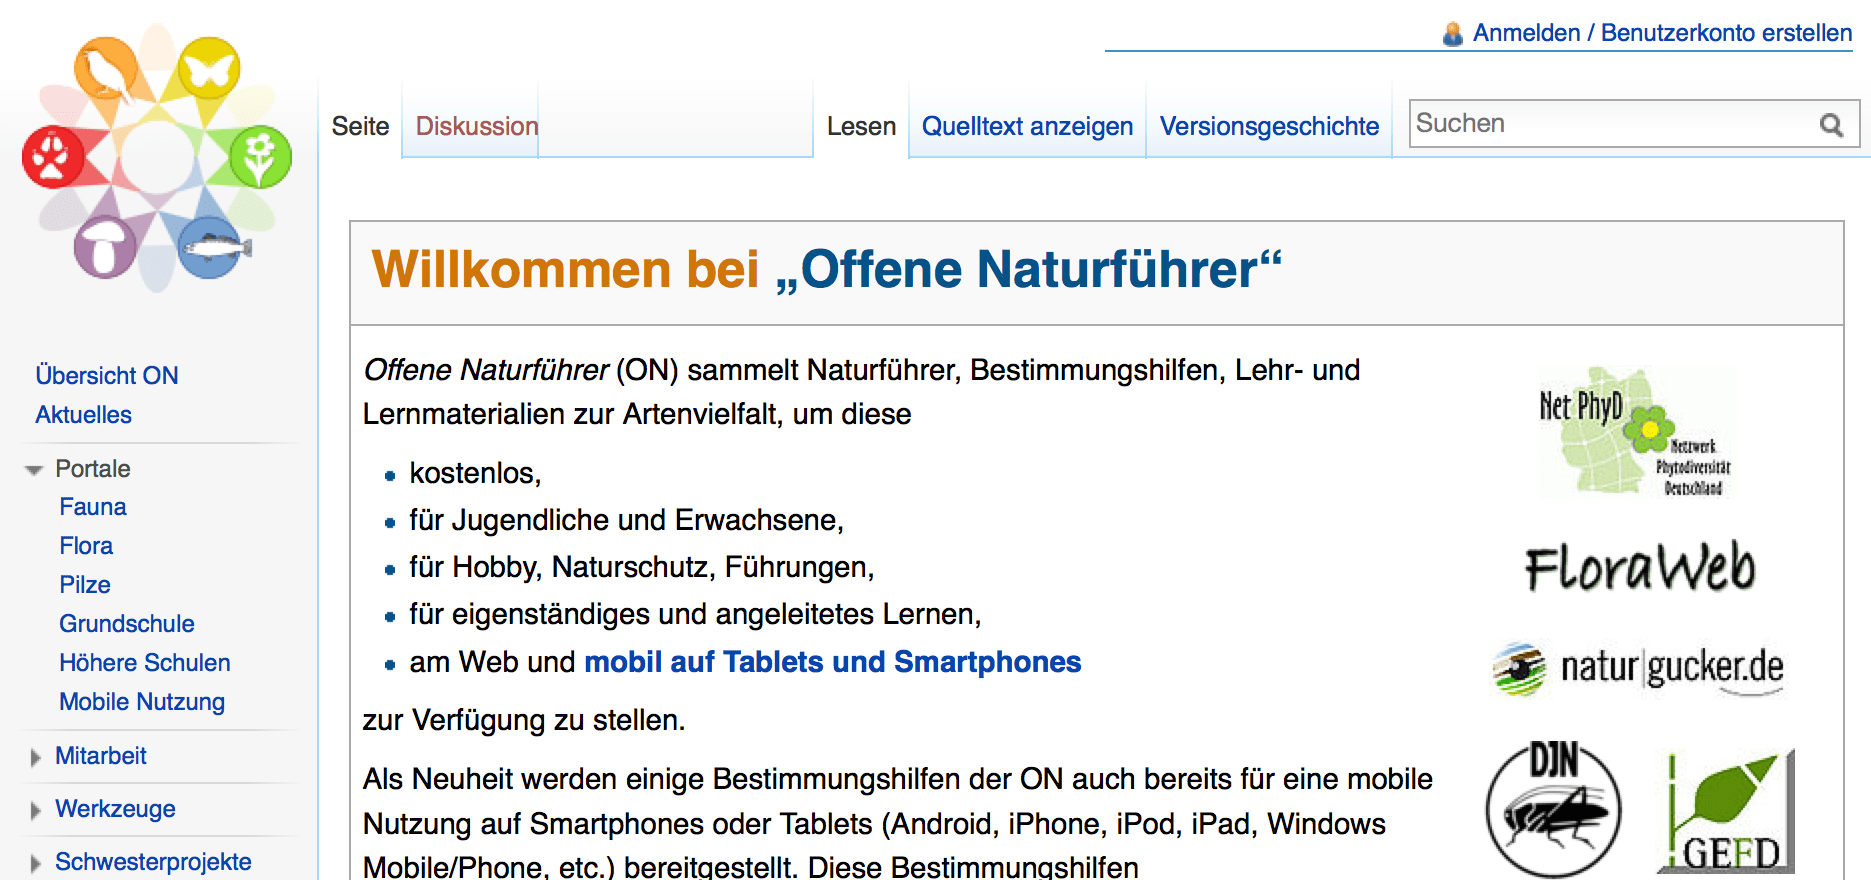 Screenshot von offene-naturfuehrer.de (nicht unter freier Lizenz)